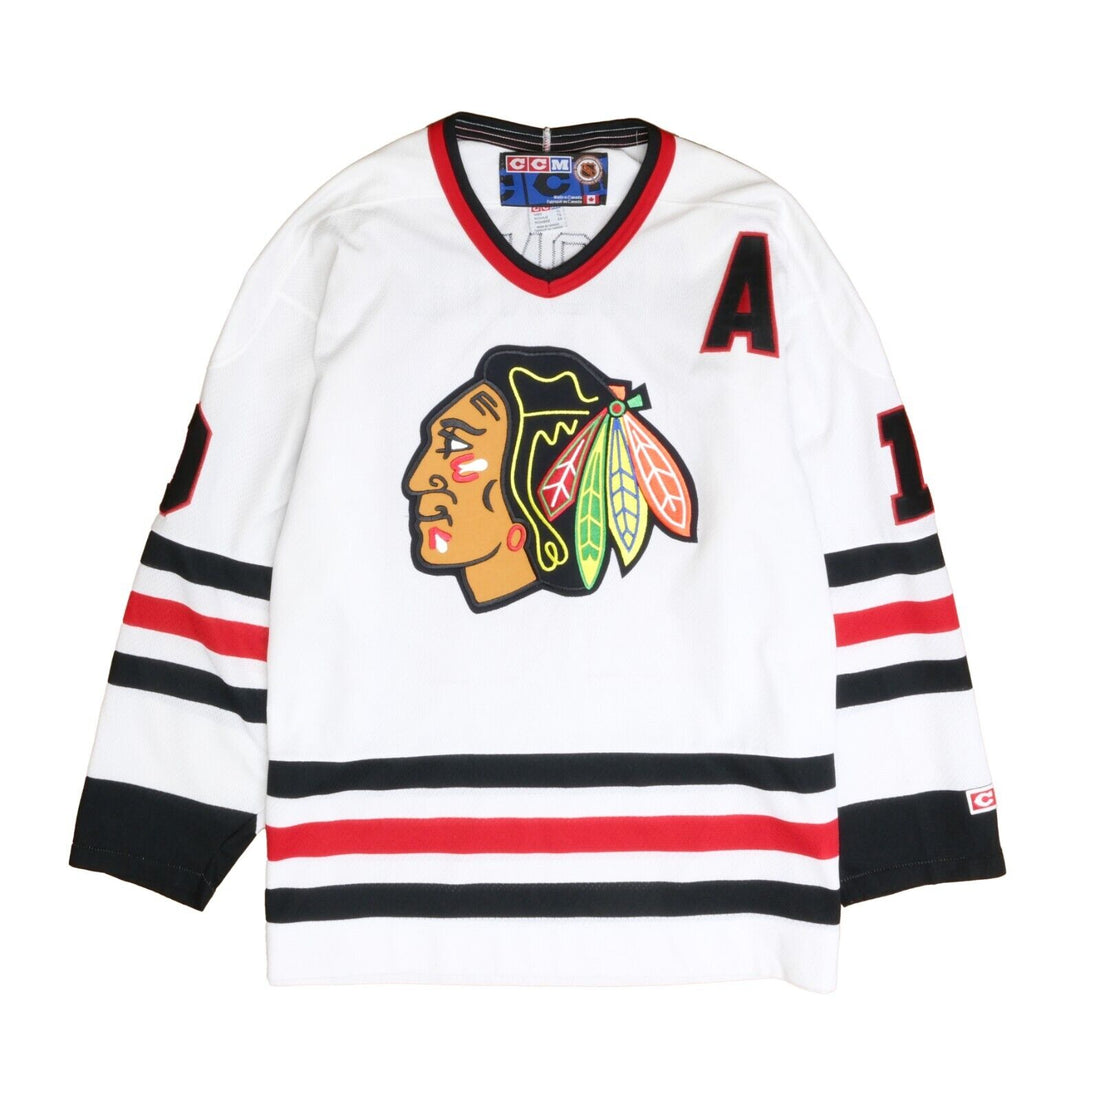 Vintage Chicago Blackhawks Starter Hockey Jersey Size Medium White